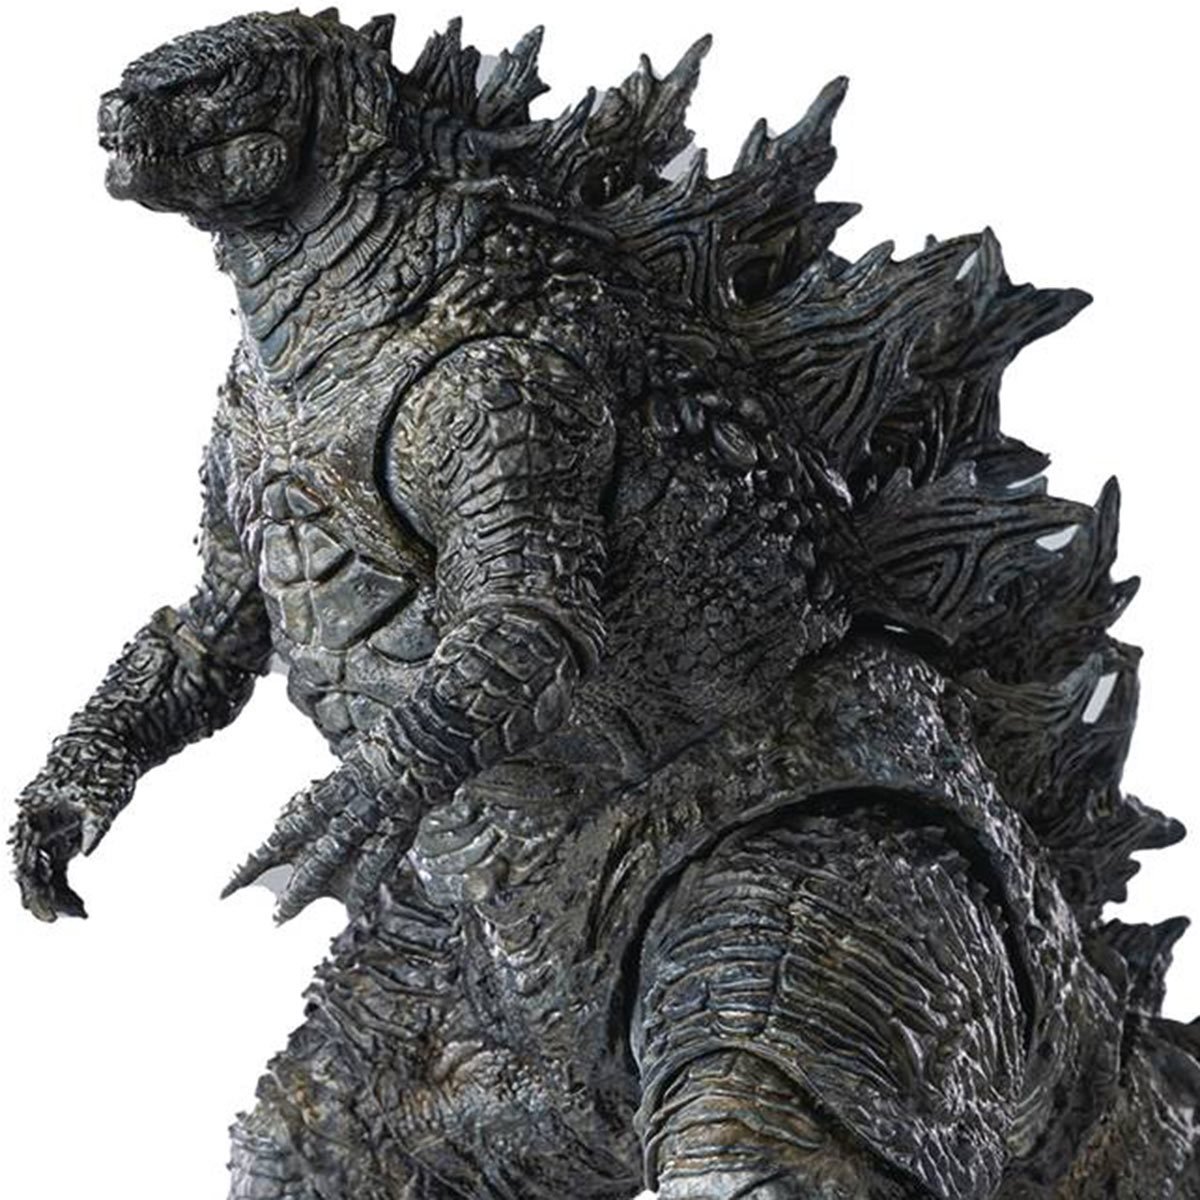 Godzilla vs. Kong Exquisite Basic Series Godzilla Action Figure